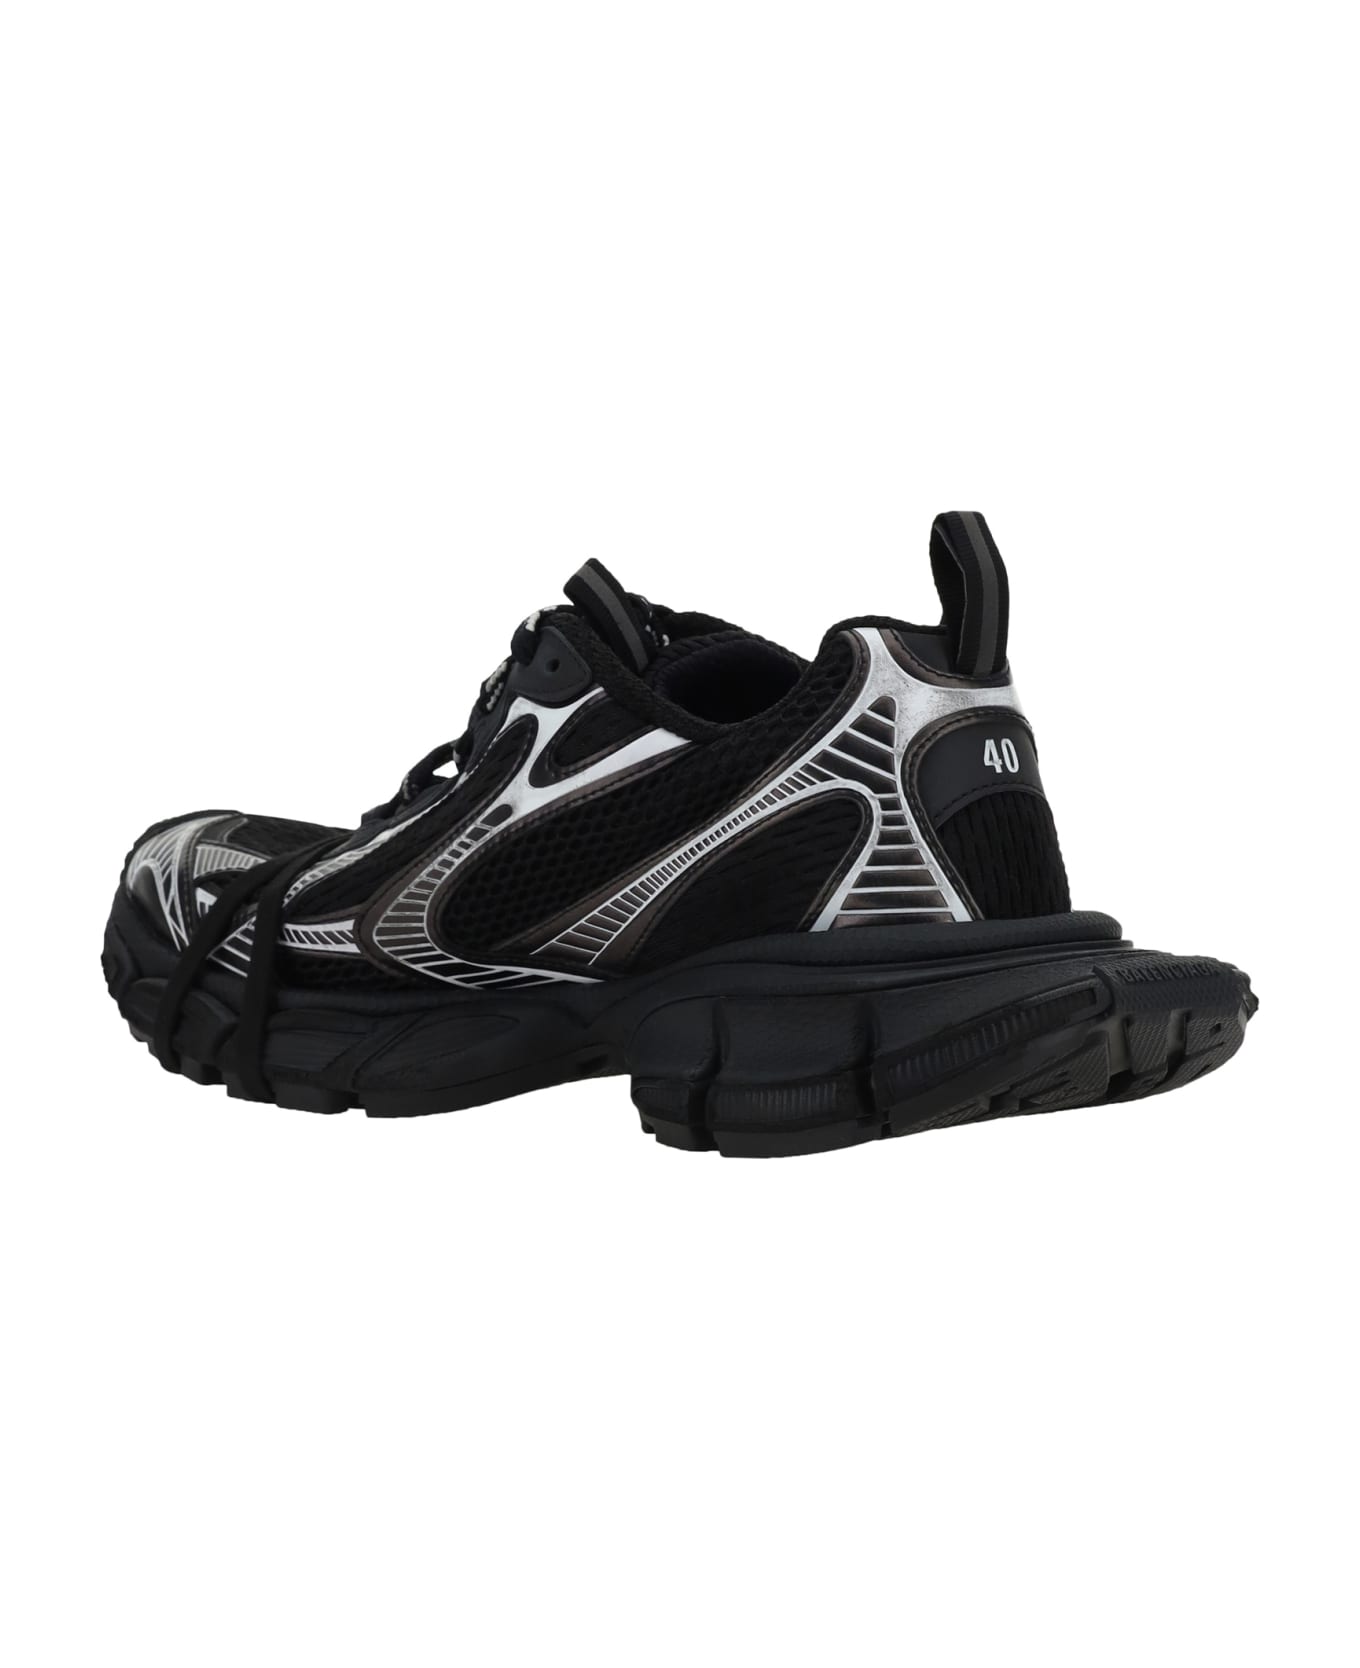 Balenciaga Sneakers - Black/white